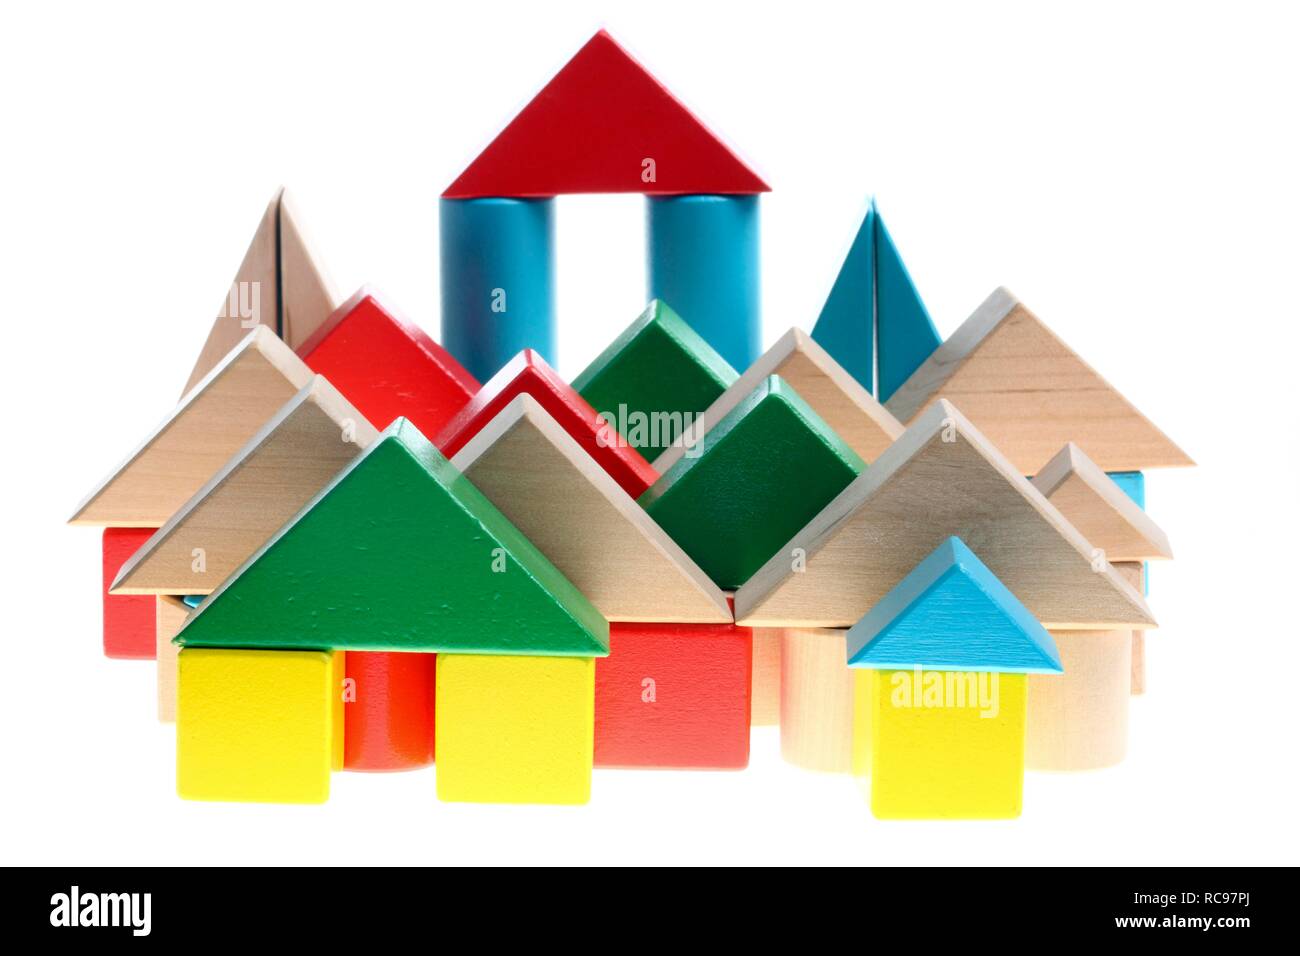 Viele Häuser aus Spielzeug Bausteine, symbolische Bild für Leben in der Stadt Stockfoto